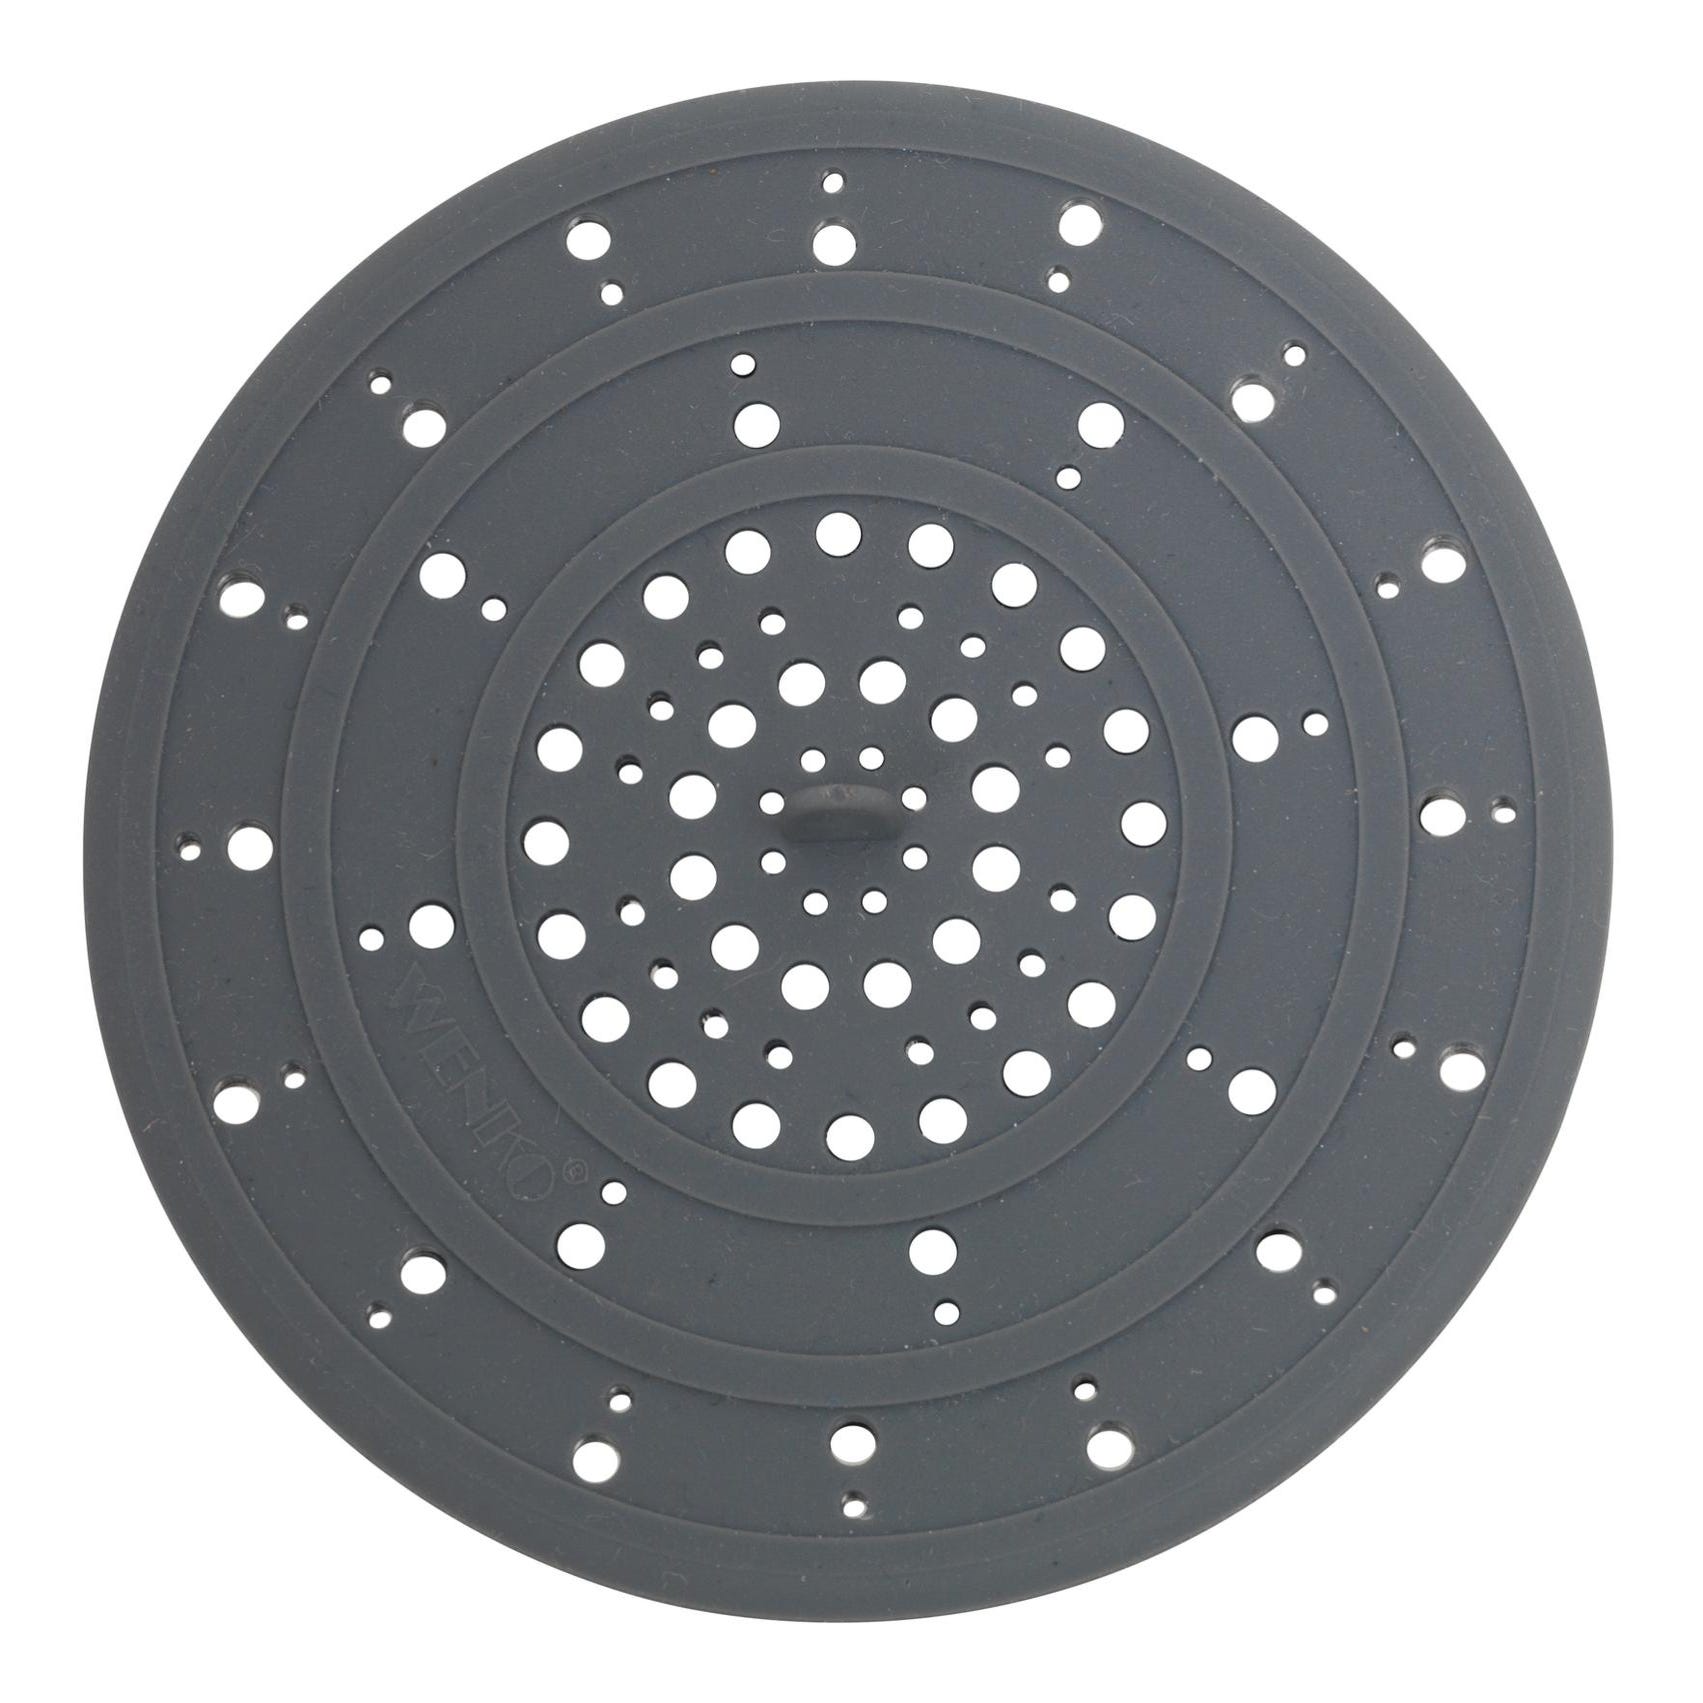 Tamis évier cuisine - PVC chromé - Design étoile - diamètre 70 mm